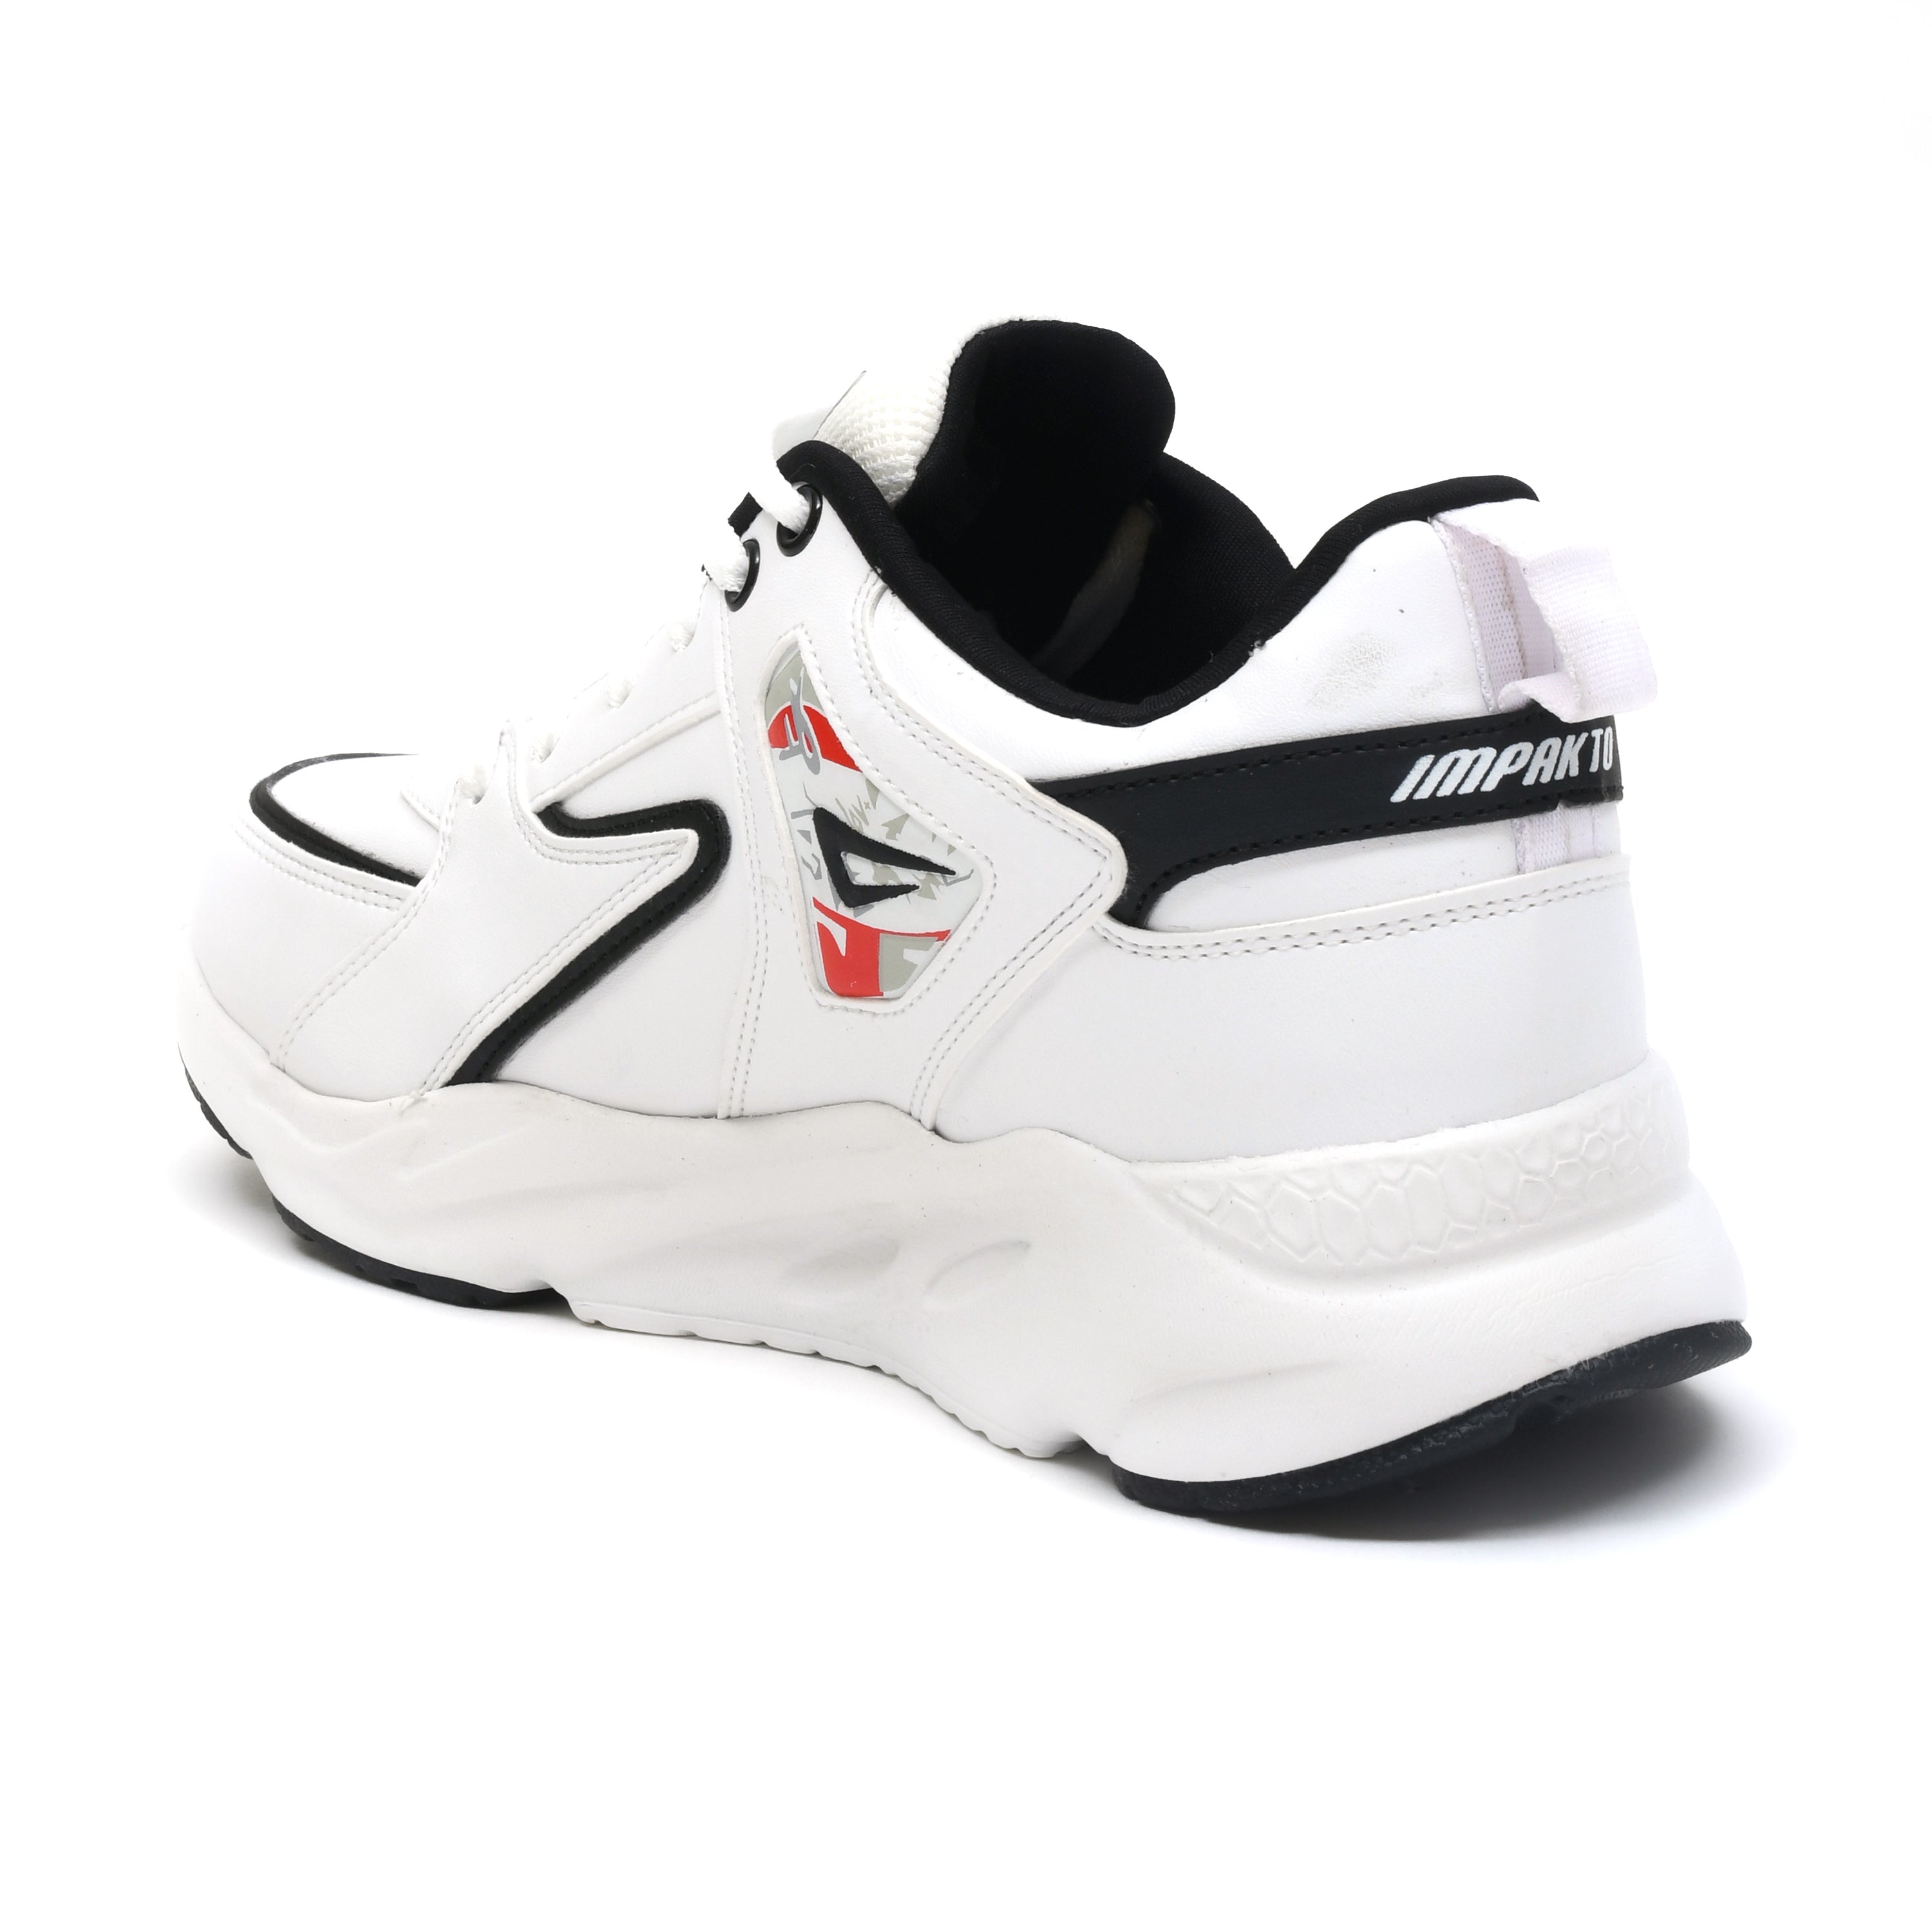 Impakto Astral White Men's Running Shoes